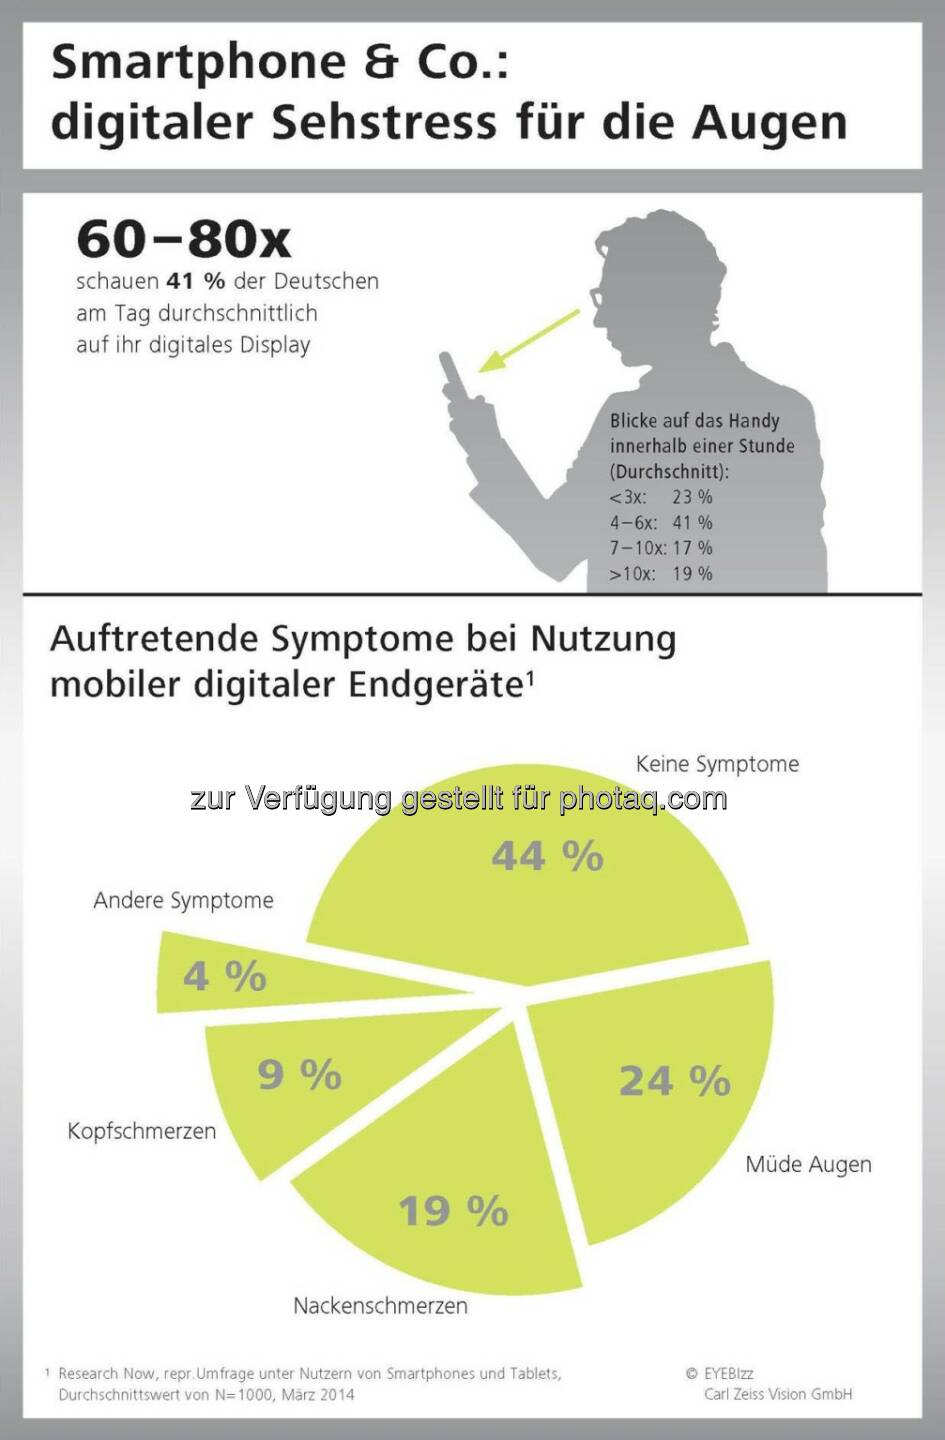 Digitaler Sehstress für die Augen durch Smartphone&Co: Jeder zweite Deutsche spürt die Symptome.  obs/Carl Zeiss Vision GmbH